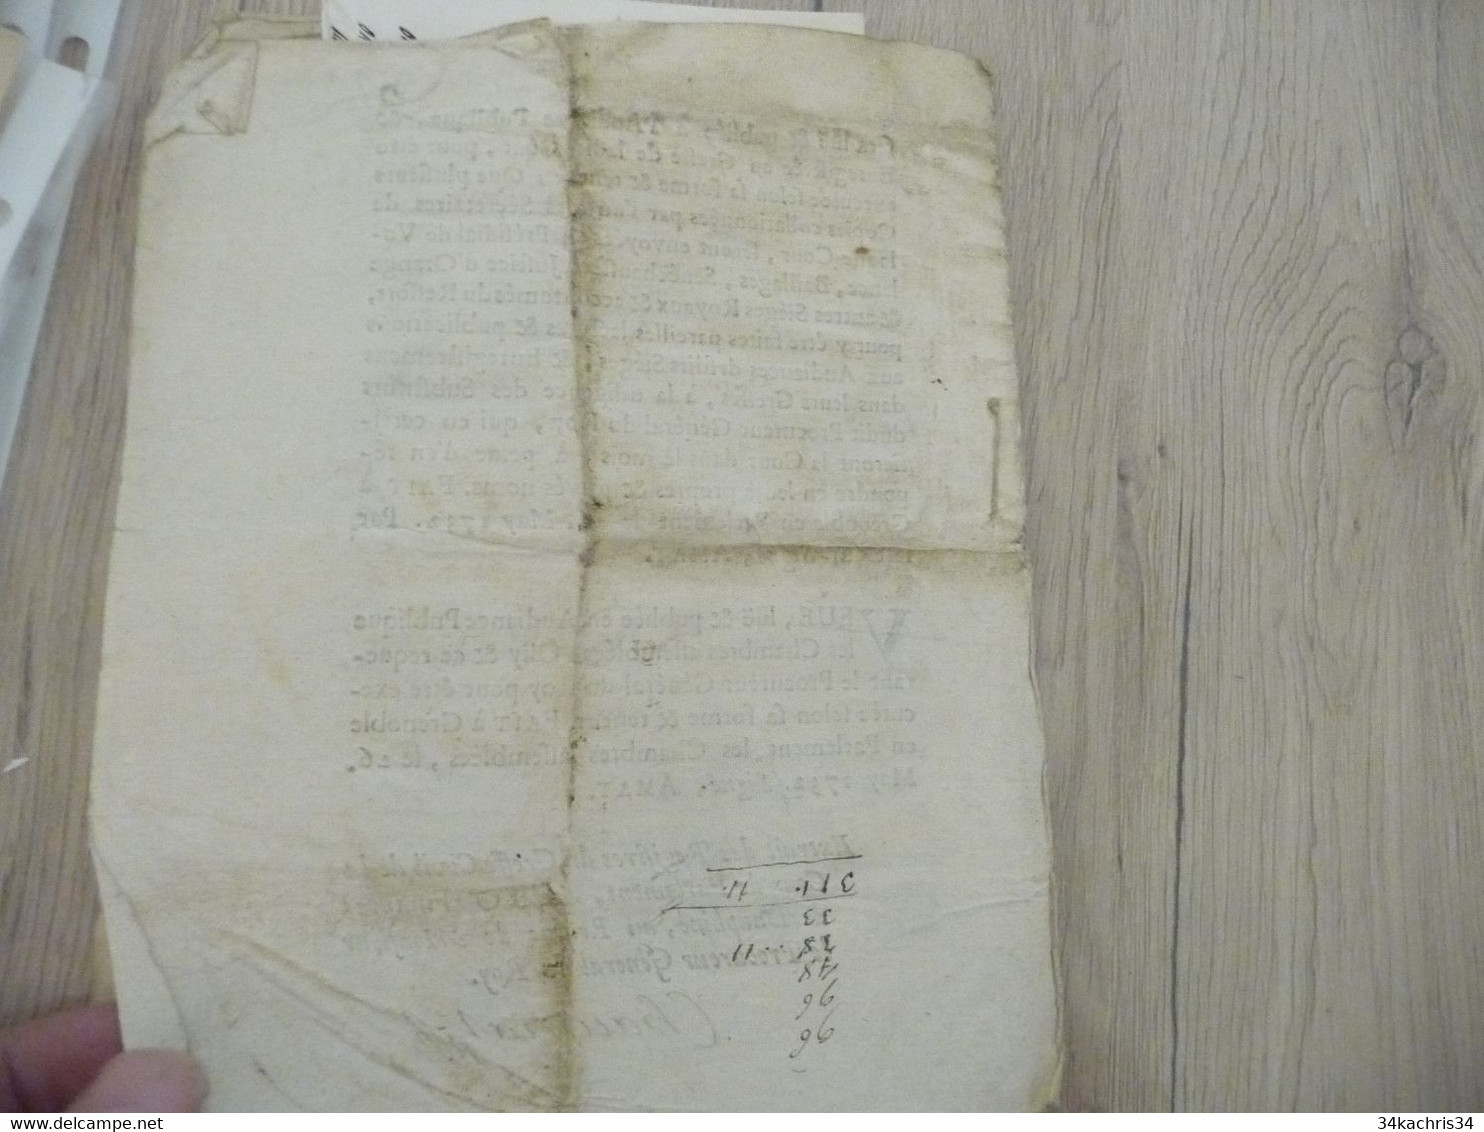 Déclaration du ROI Versailles 25/03/1732 concernant les inscriptions des faux autographe Chaumat 9 pages